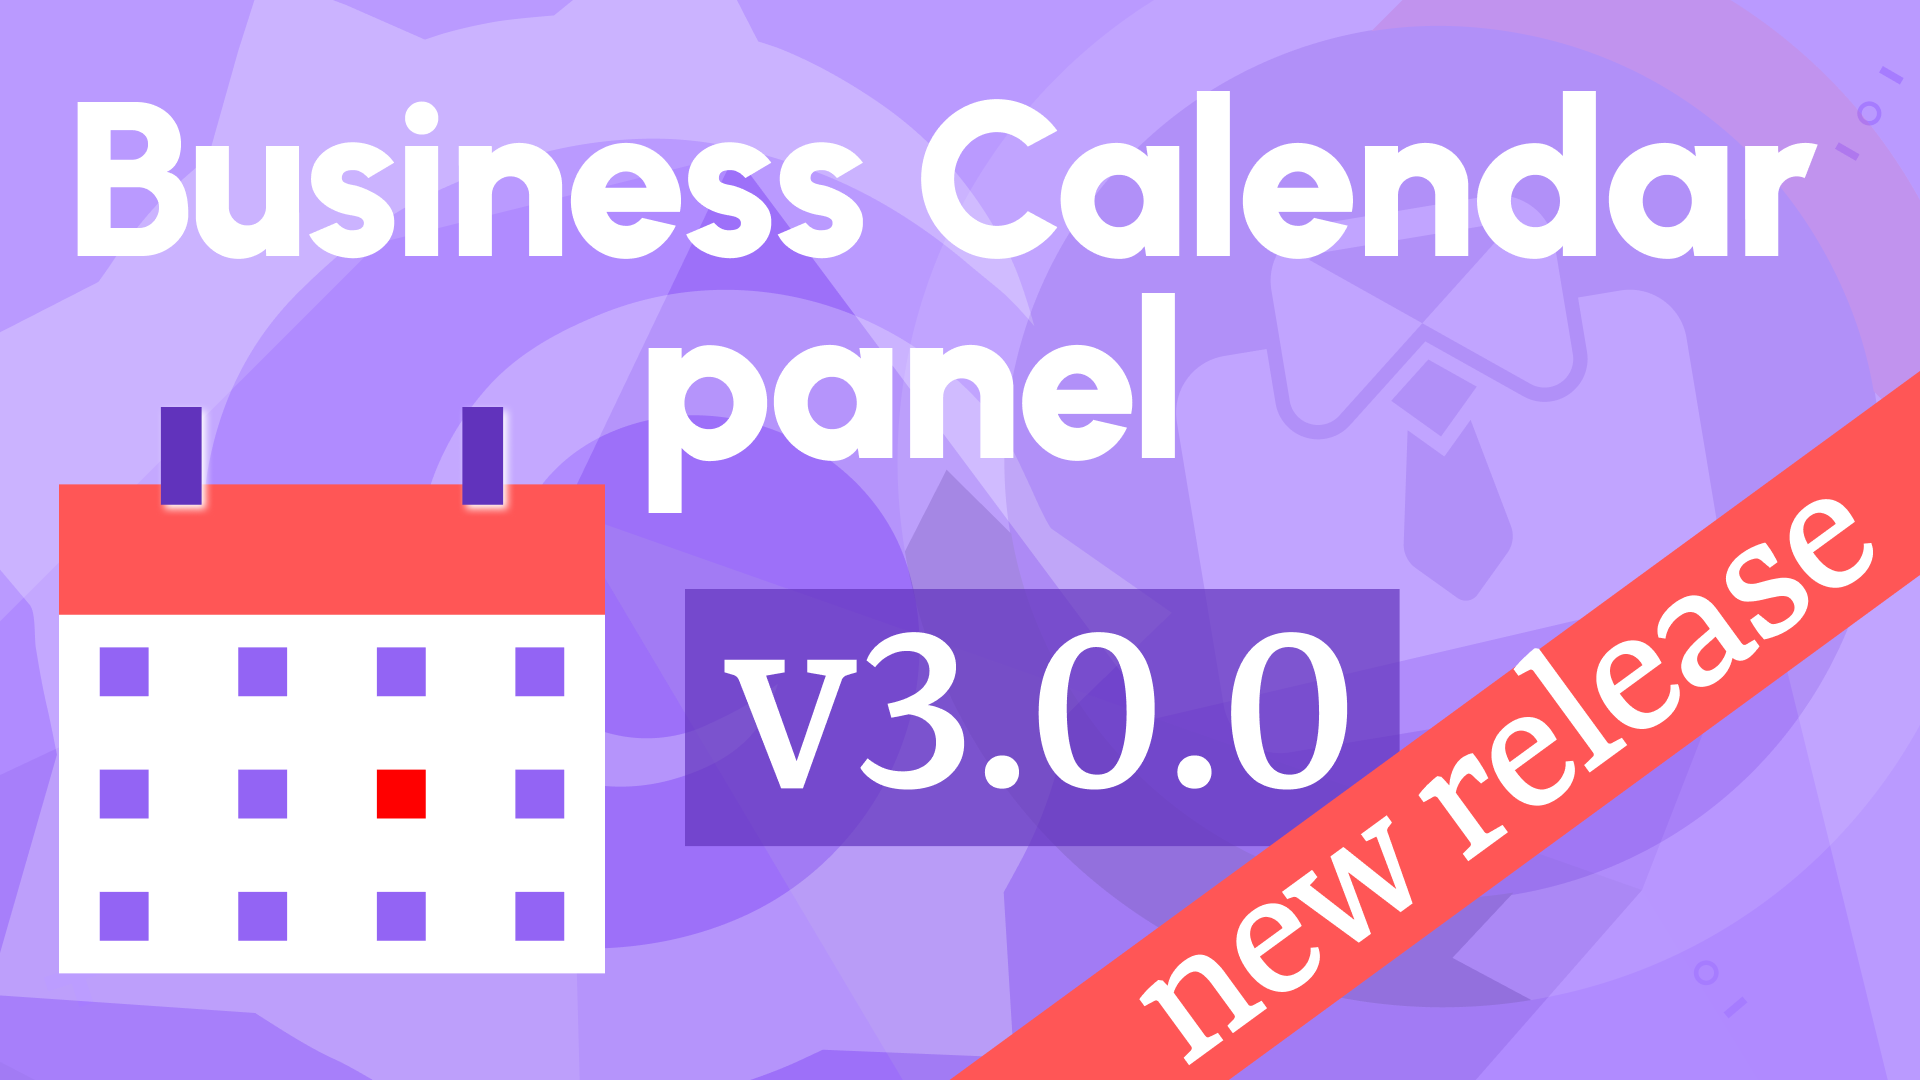 Business Calendar Panel 3.0.0